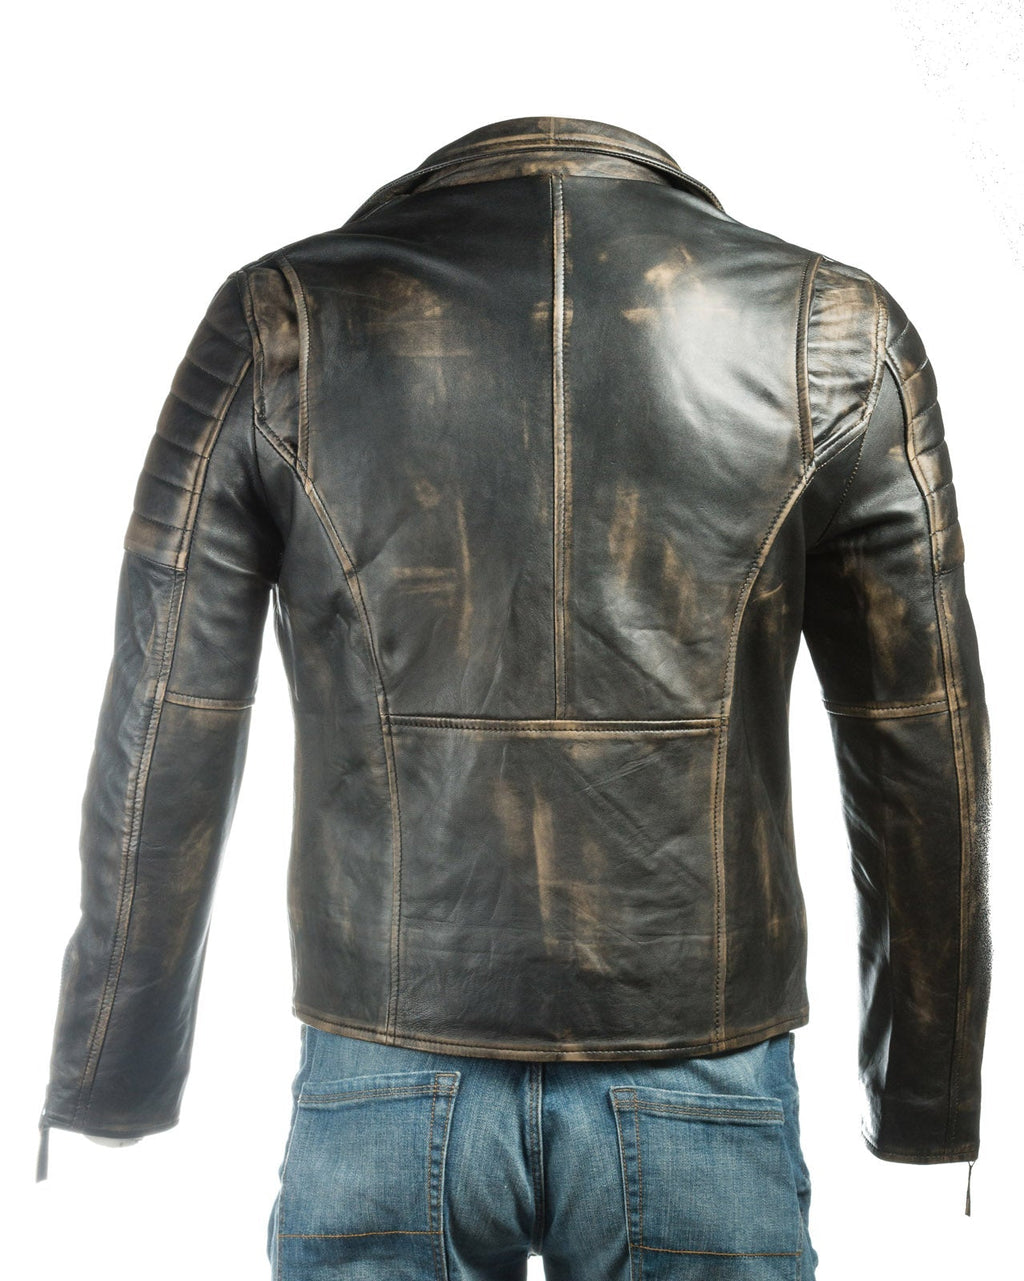 Men's Burgundy Vintage Look Biker Style Leather Jacket: Placido